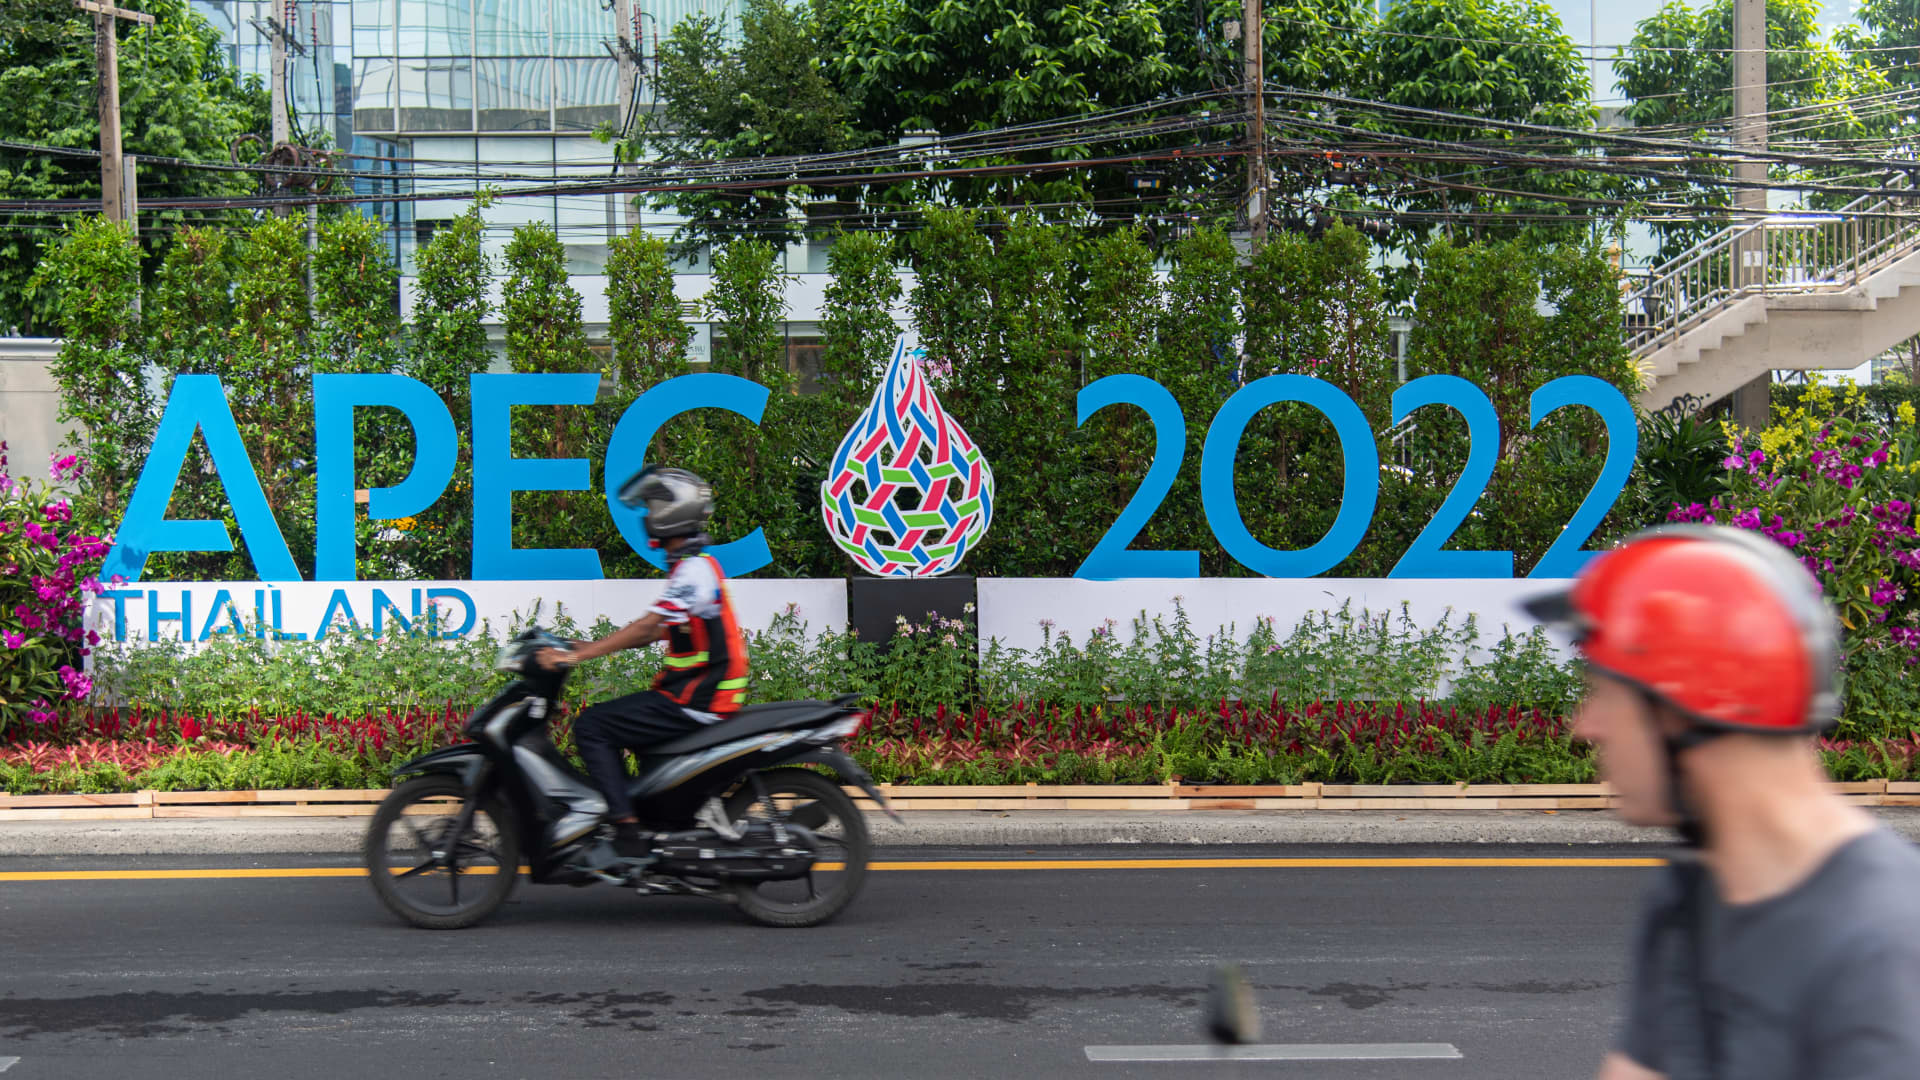 APEC ने व्यापार को बढ़ावा देने का संकल्प लिया क्योंकि भू-राजनीतिक बदलाव क्षेत्रीय शिखर सम्मेलनों को हाईजैक कर लेते हैं